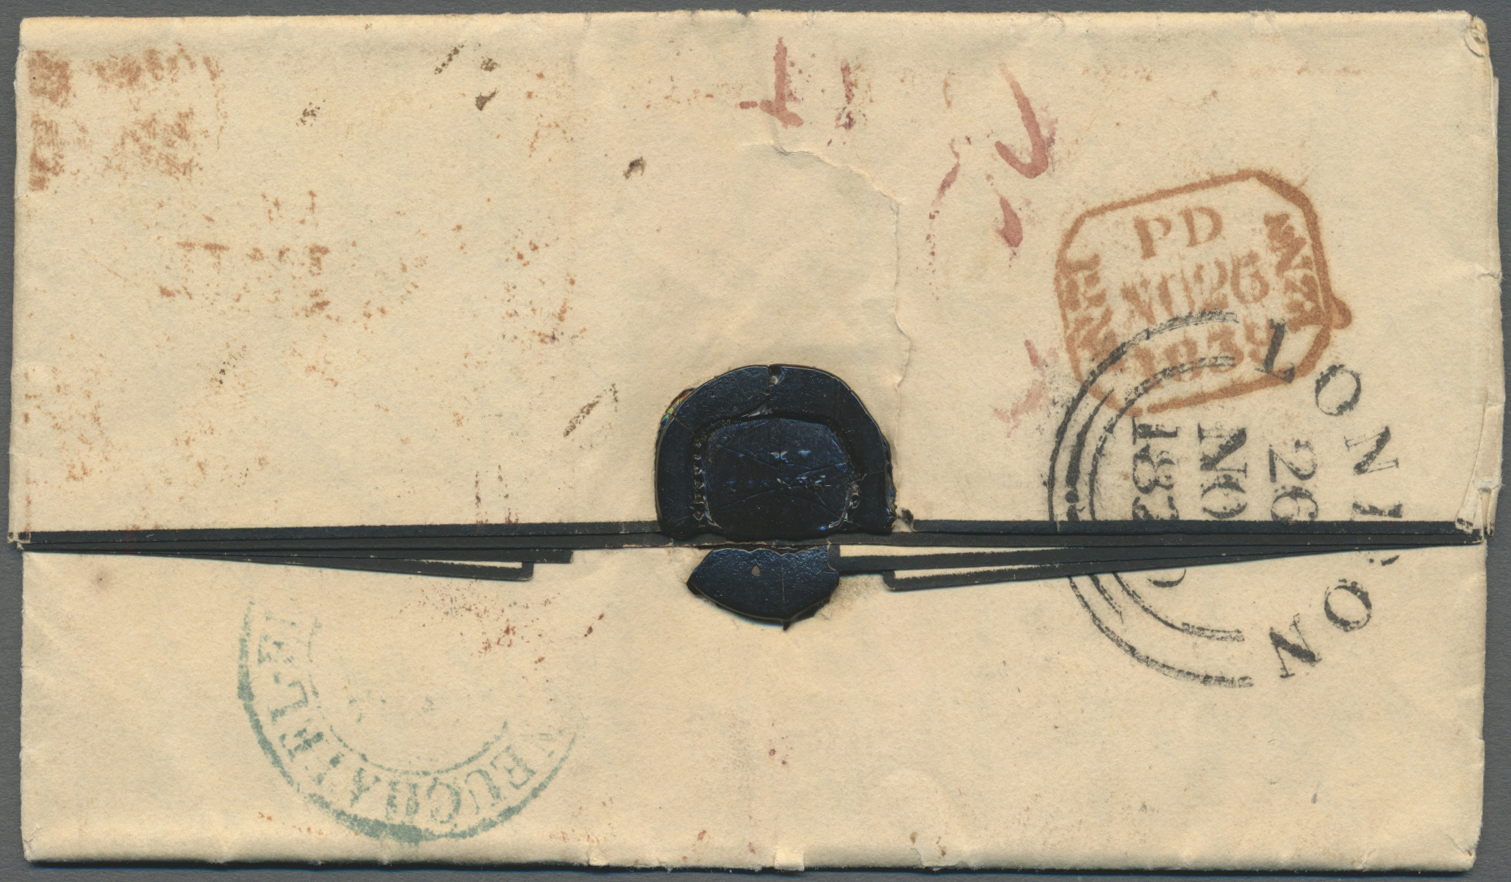 Br Großbritannien - Vorphilatelie: 1839. Pre-stamp Mourning Envelope Addressed To Switzerland Cancelled By Hand-s - ...-1840 Préphilatélie